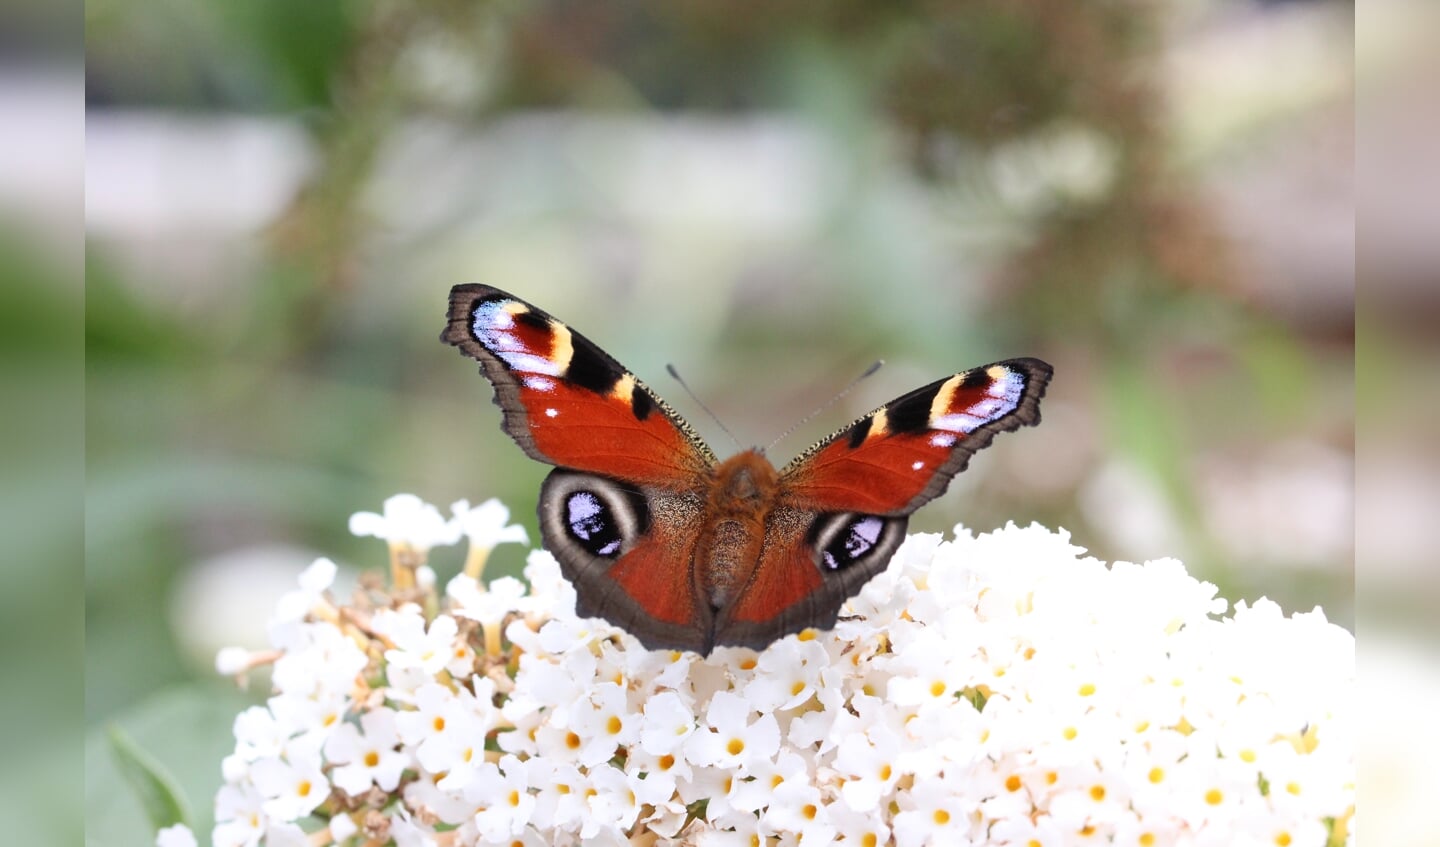 Claudia van de Broek: ,,Gemaakt op donderdag 20 augustus in eigen achtertuin bij de vlinderstruik van een dagpauwoog.